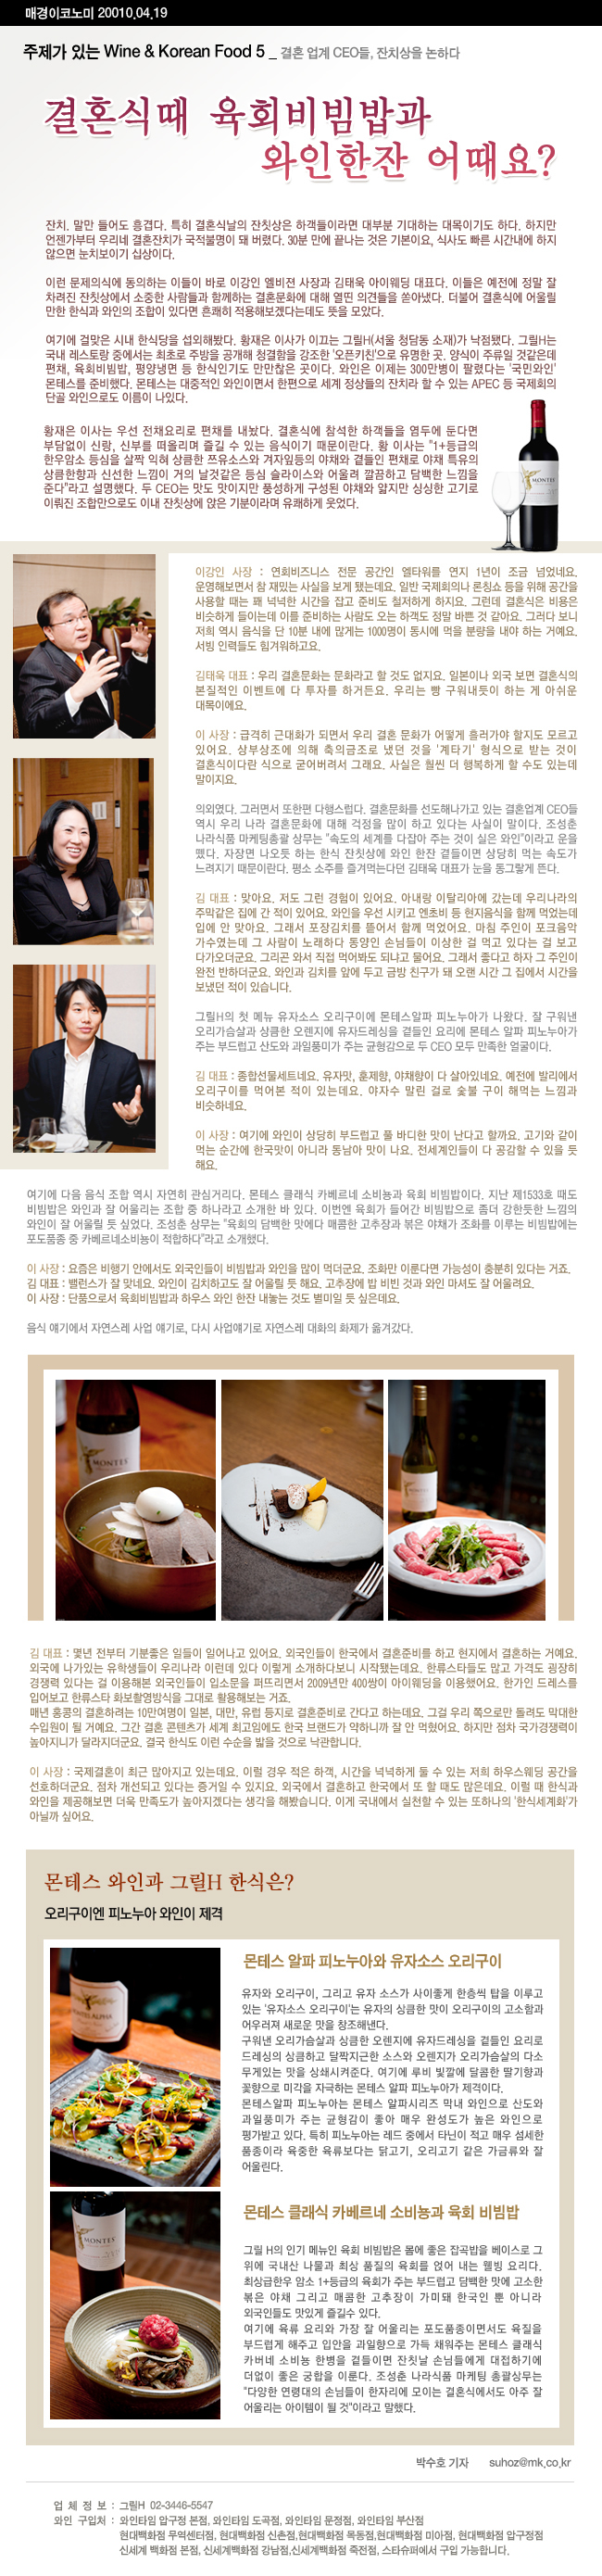 wine%20korean%20food_5-3-1.jpg